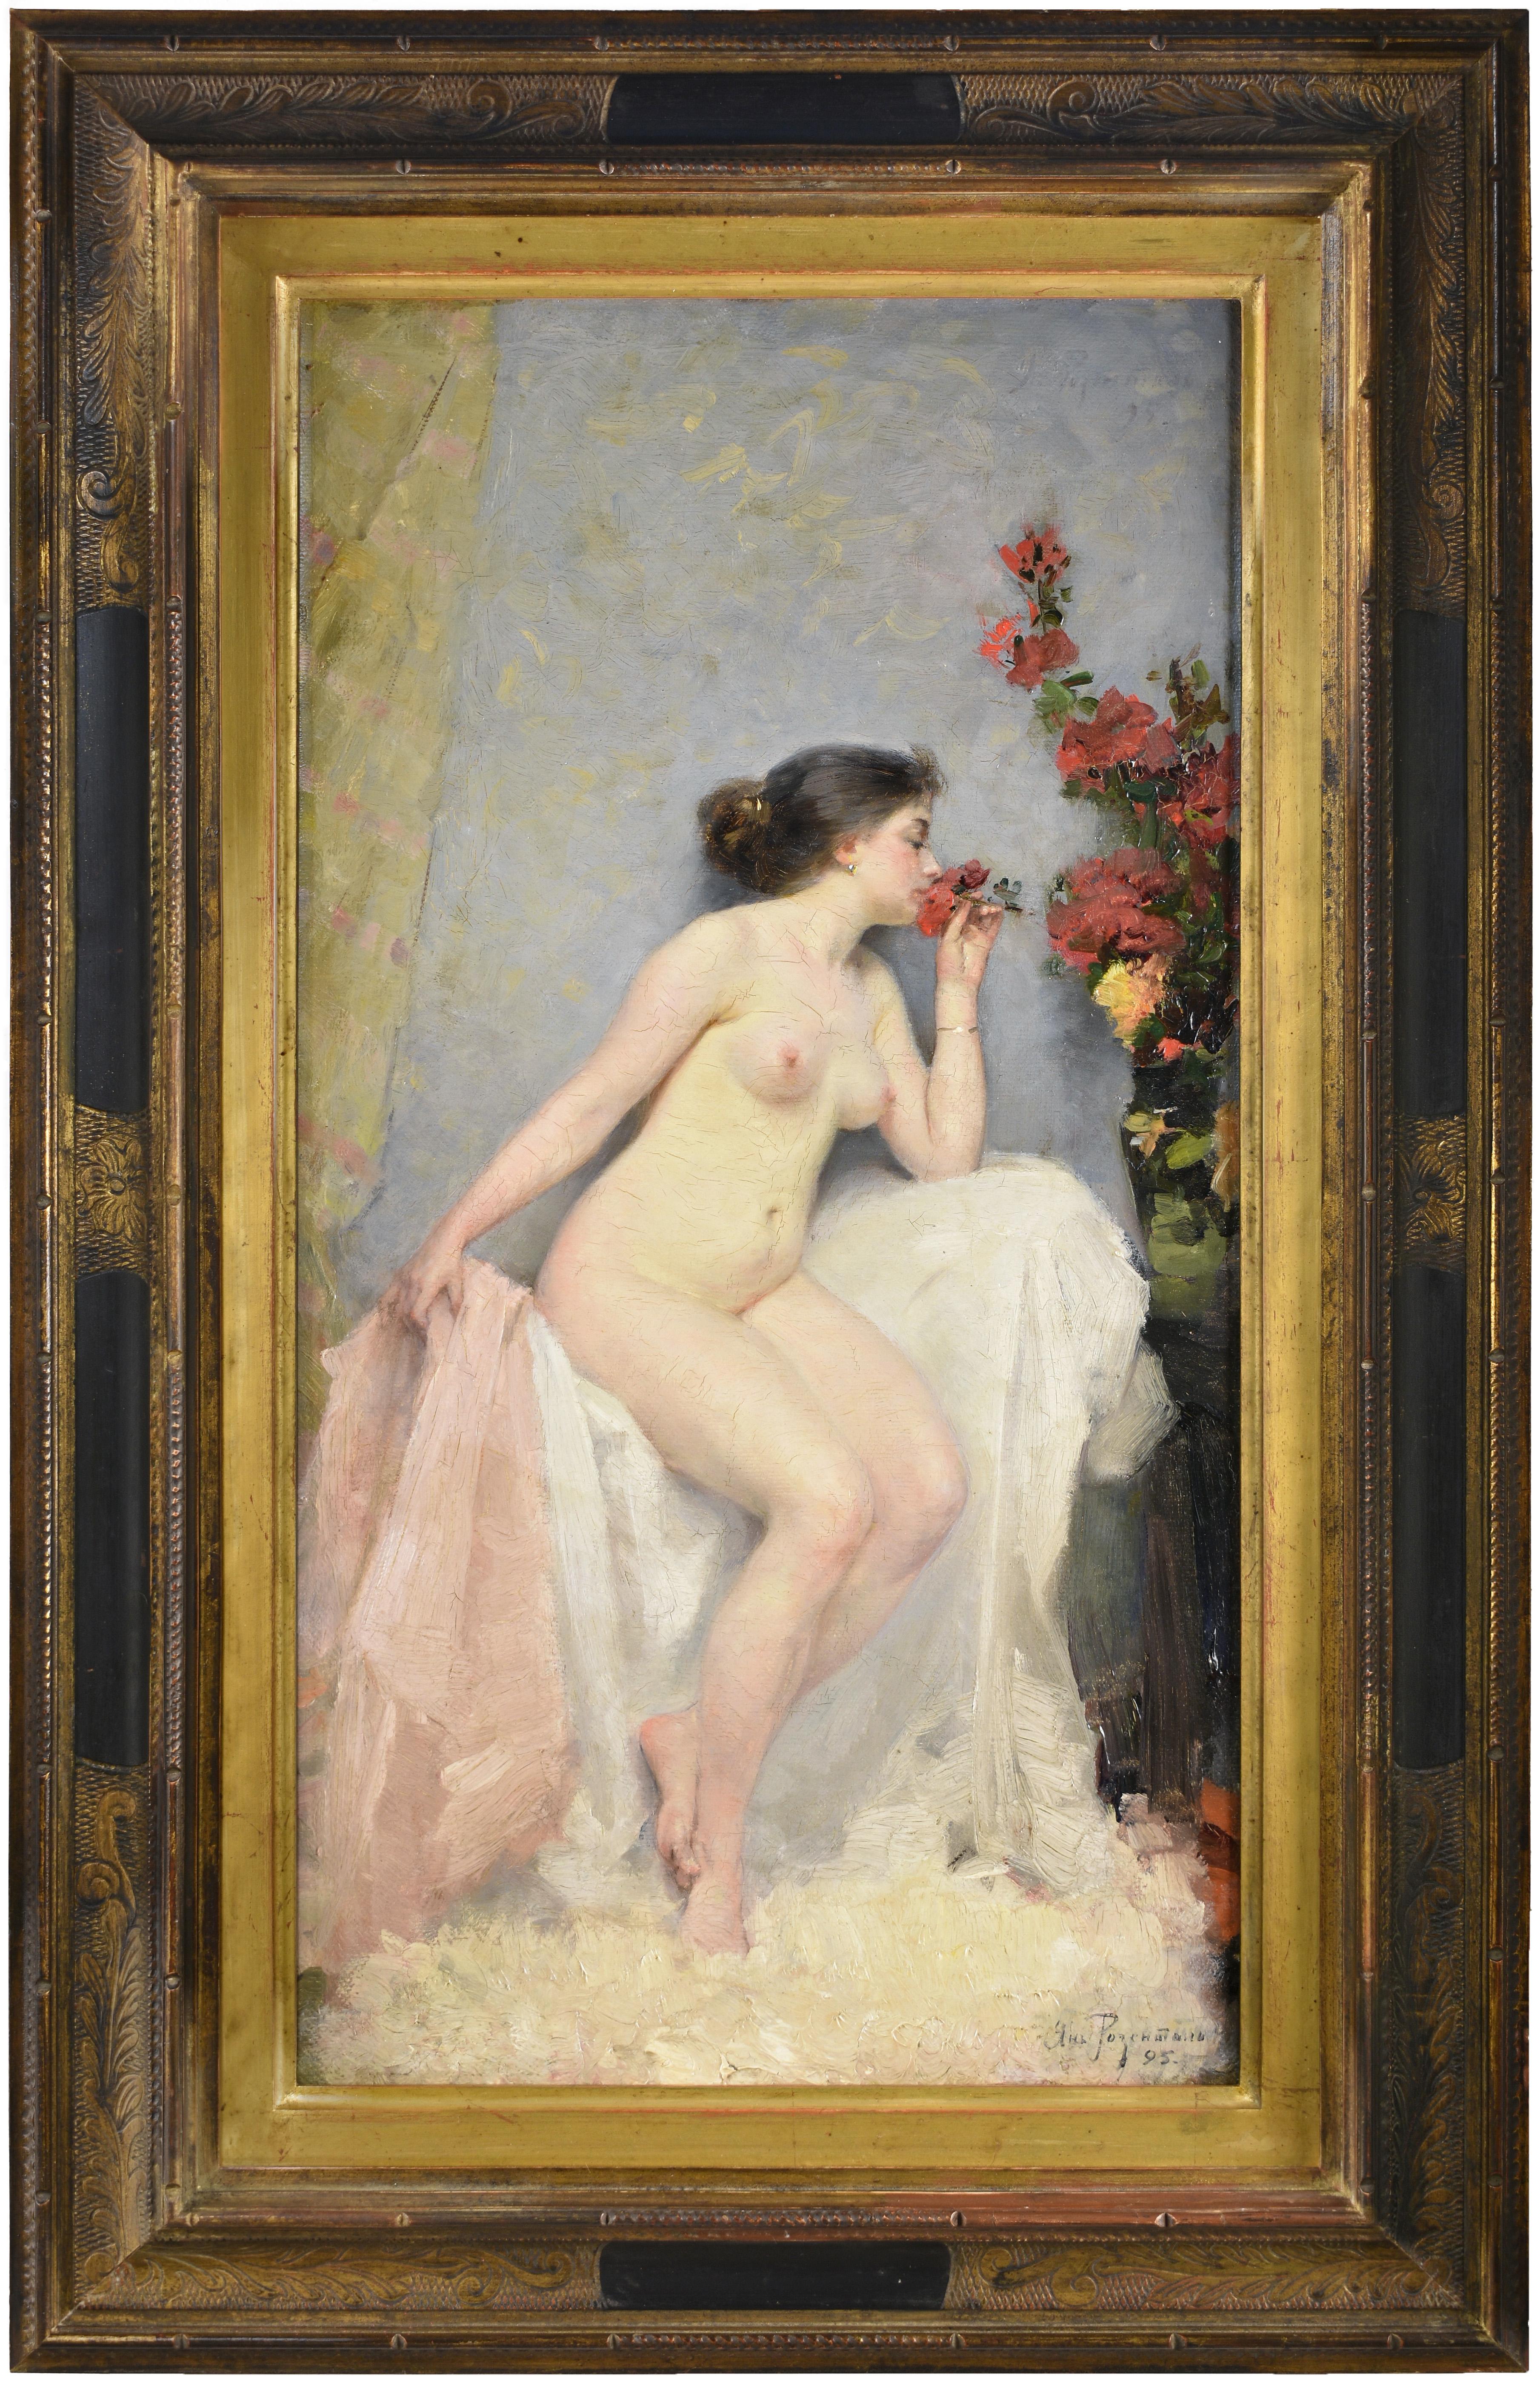 Nackte Frau mit Rosen von dem berühmten lettischen Maler Janis Rozentāls